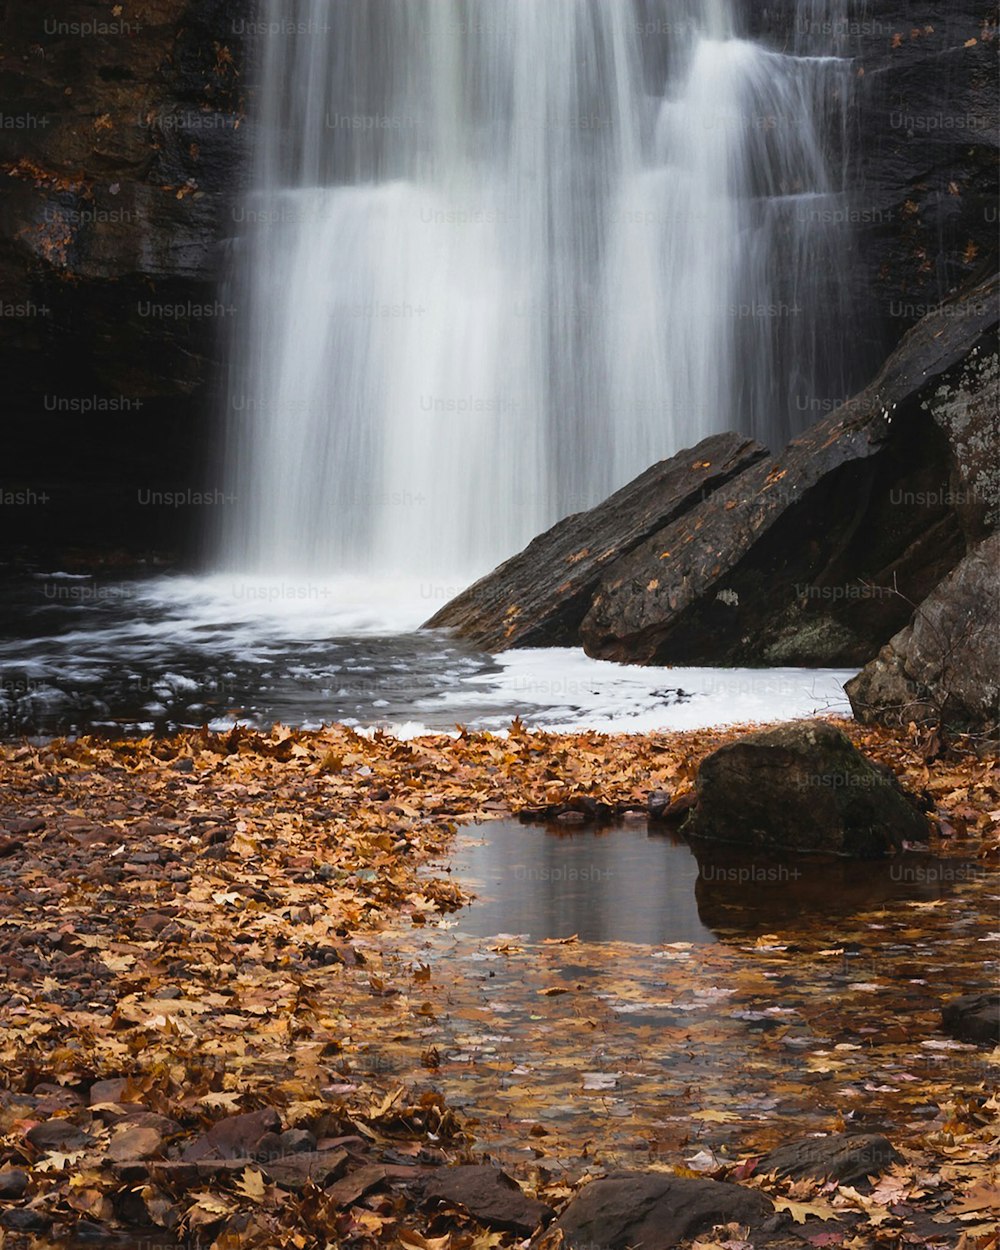 Una cascada con agua en cascada sobre rocas y hojas caídas